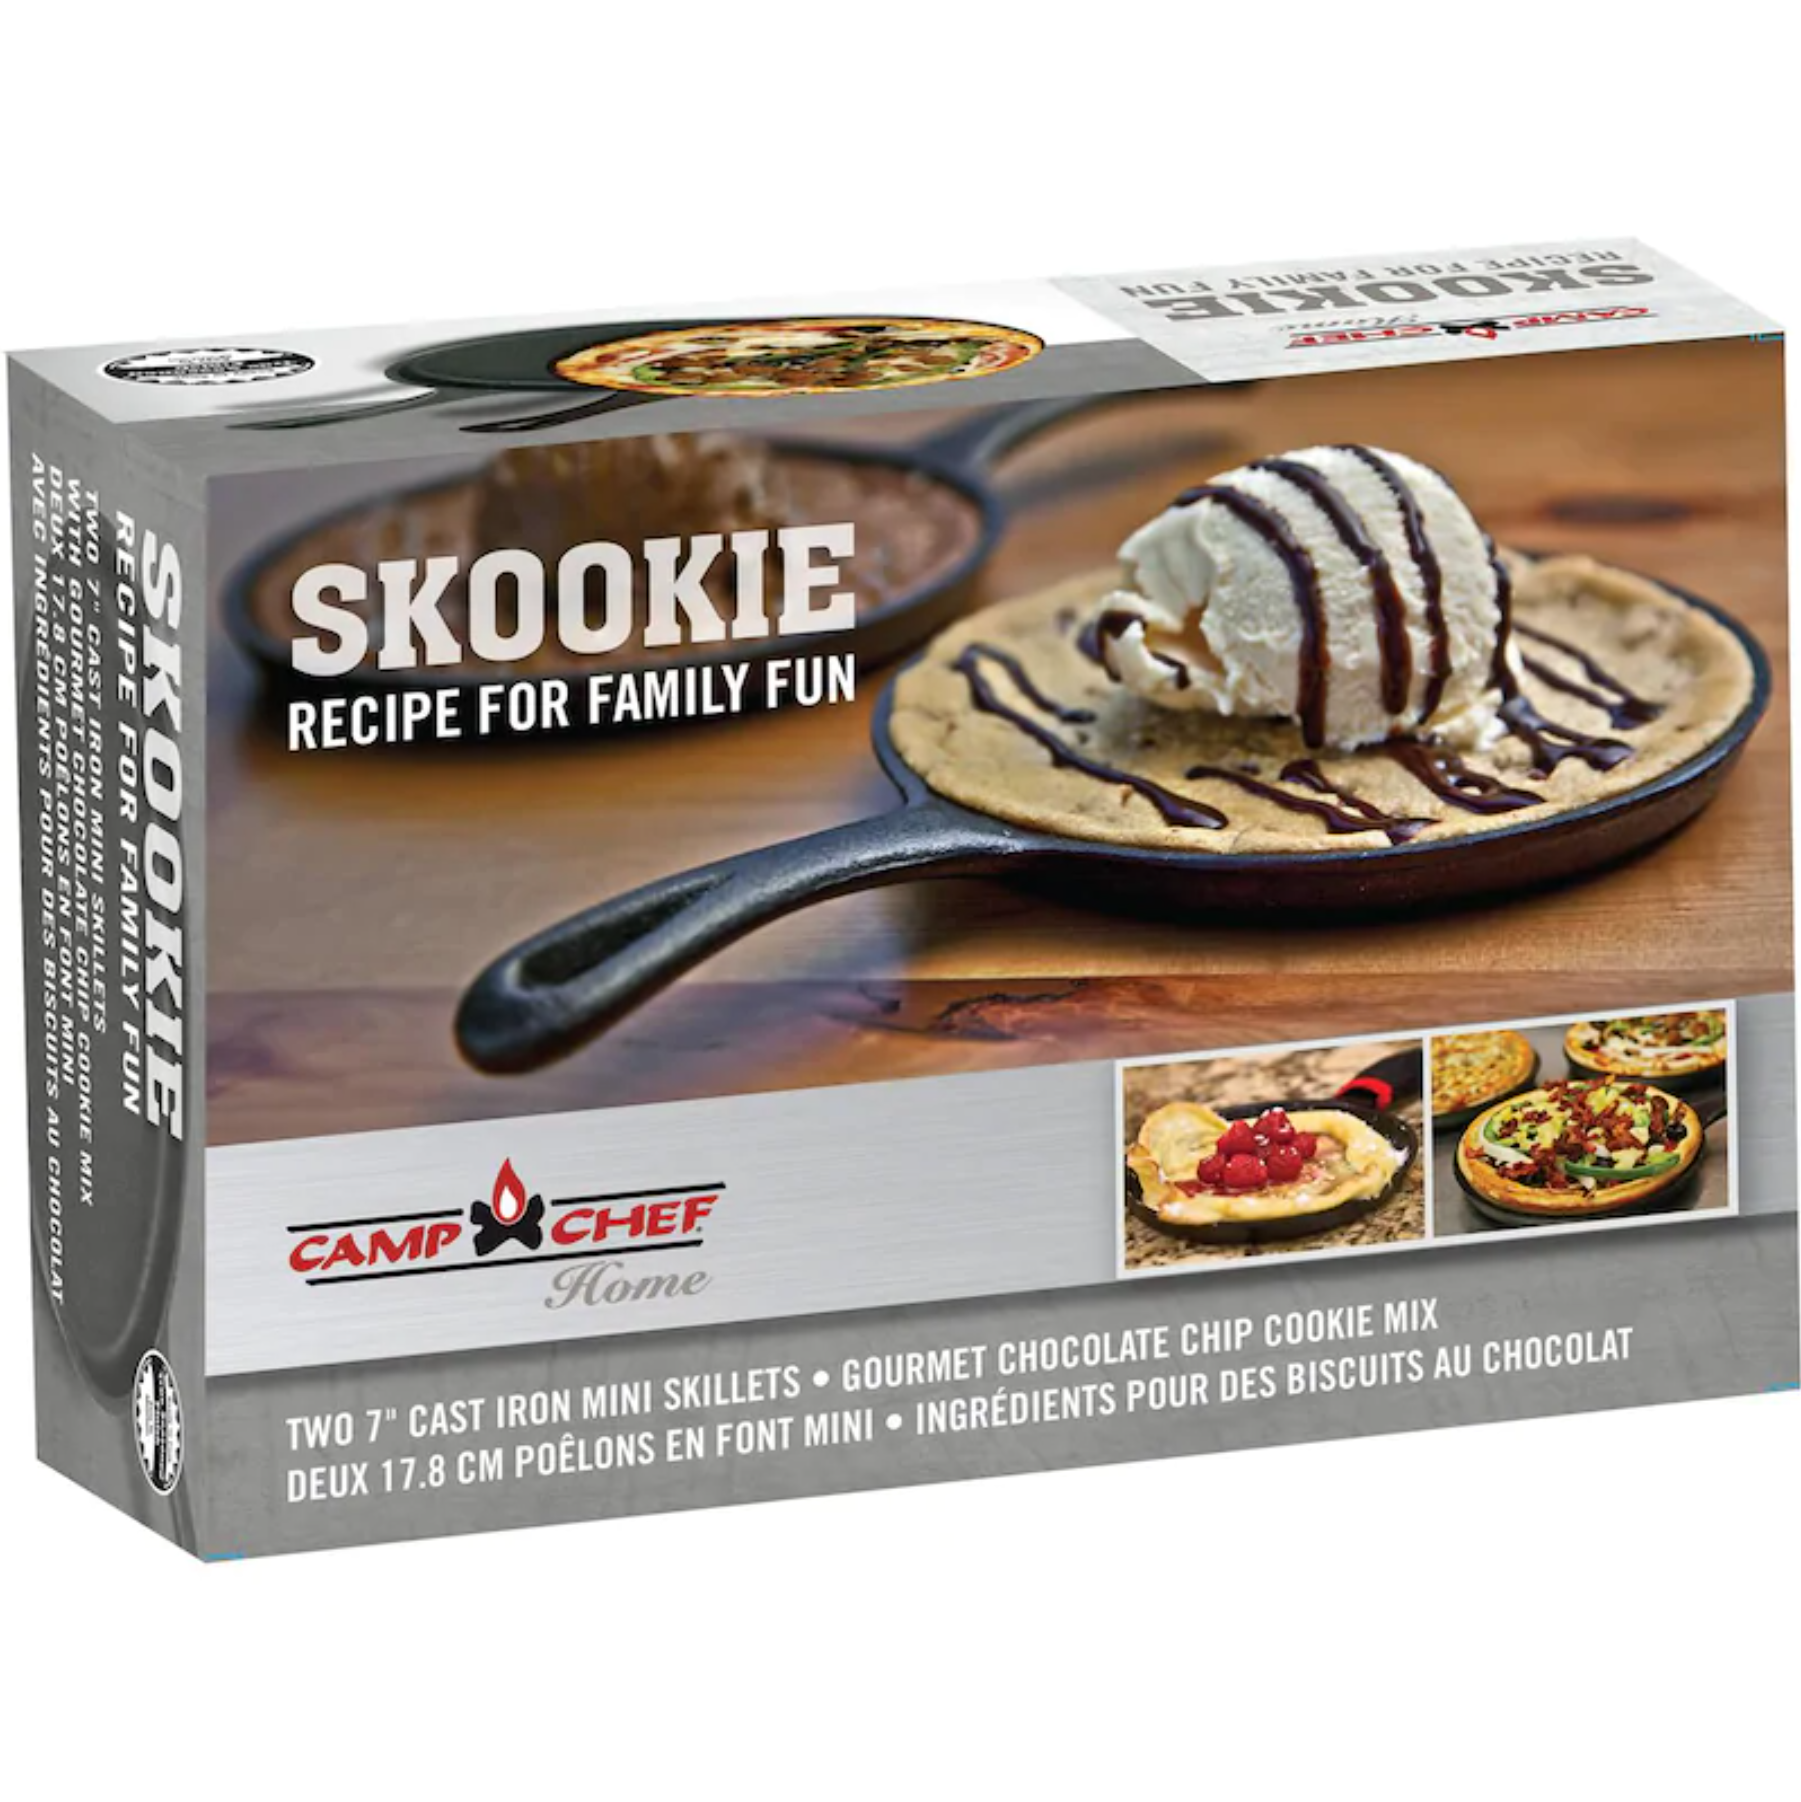 Camp Chef Skookie 7" Mini Skillet 2 Pack